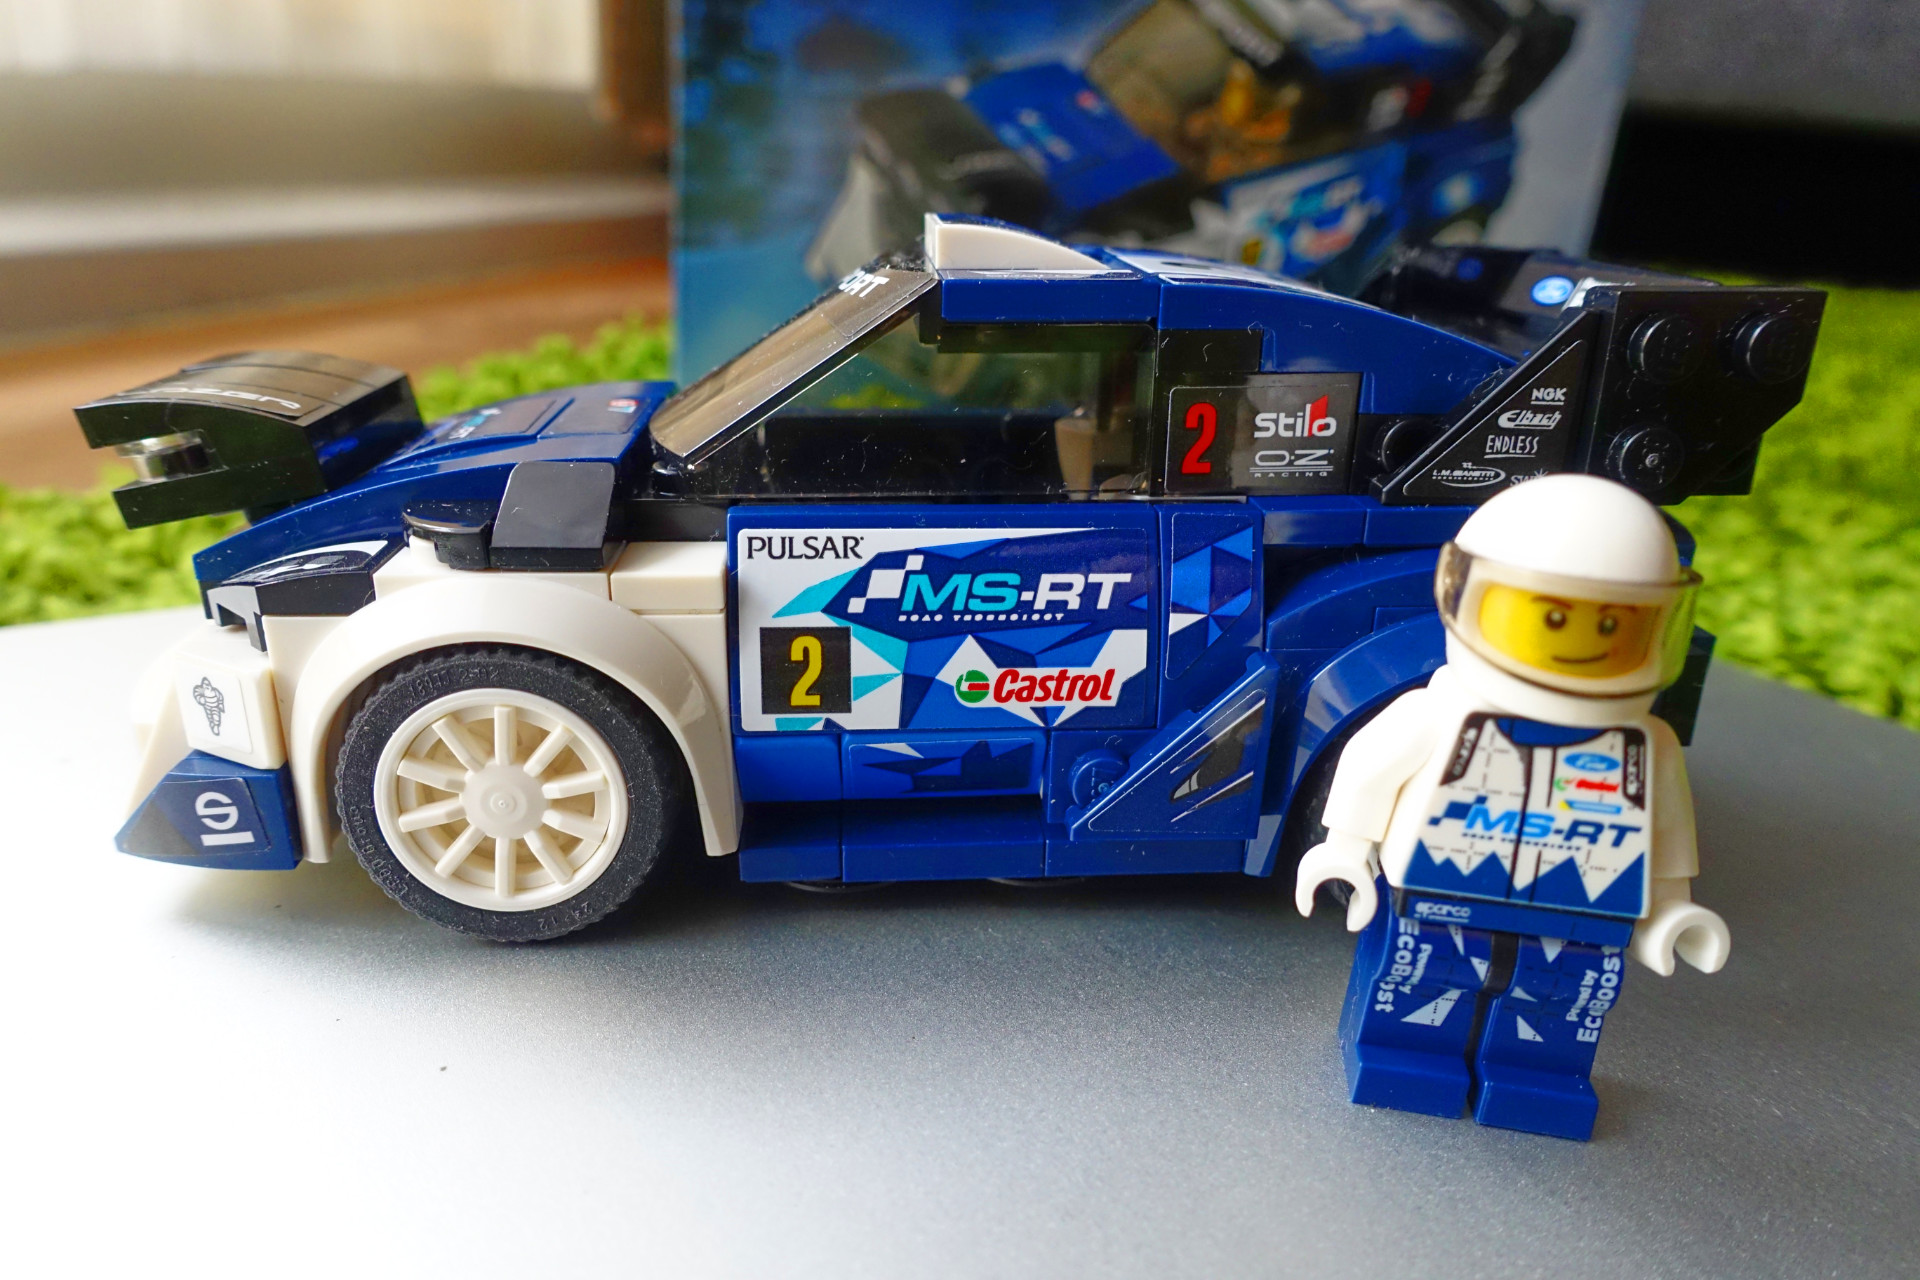 LEGO 75885 Ford Fiesta M-Sport WRC